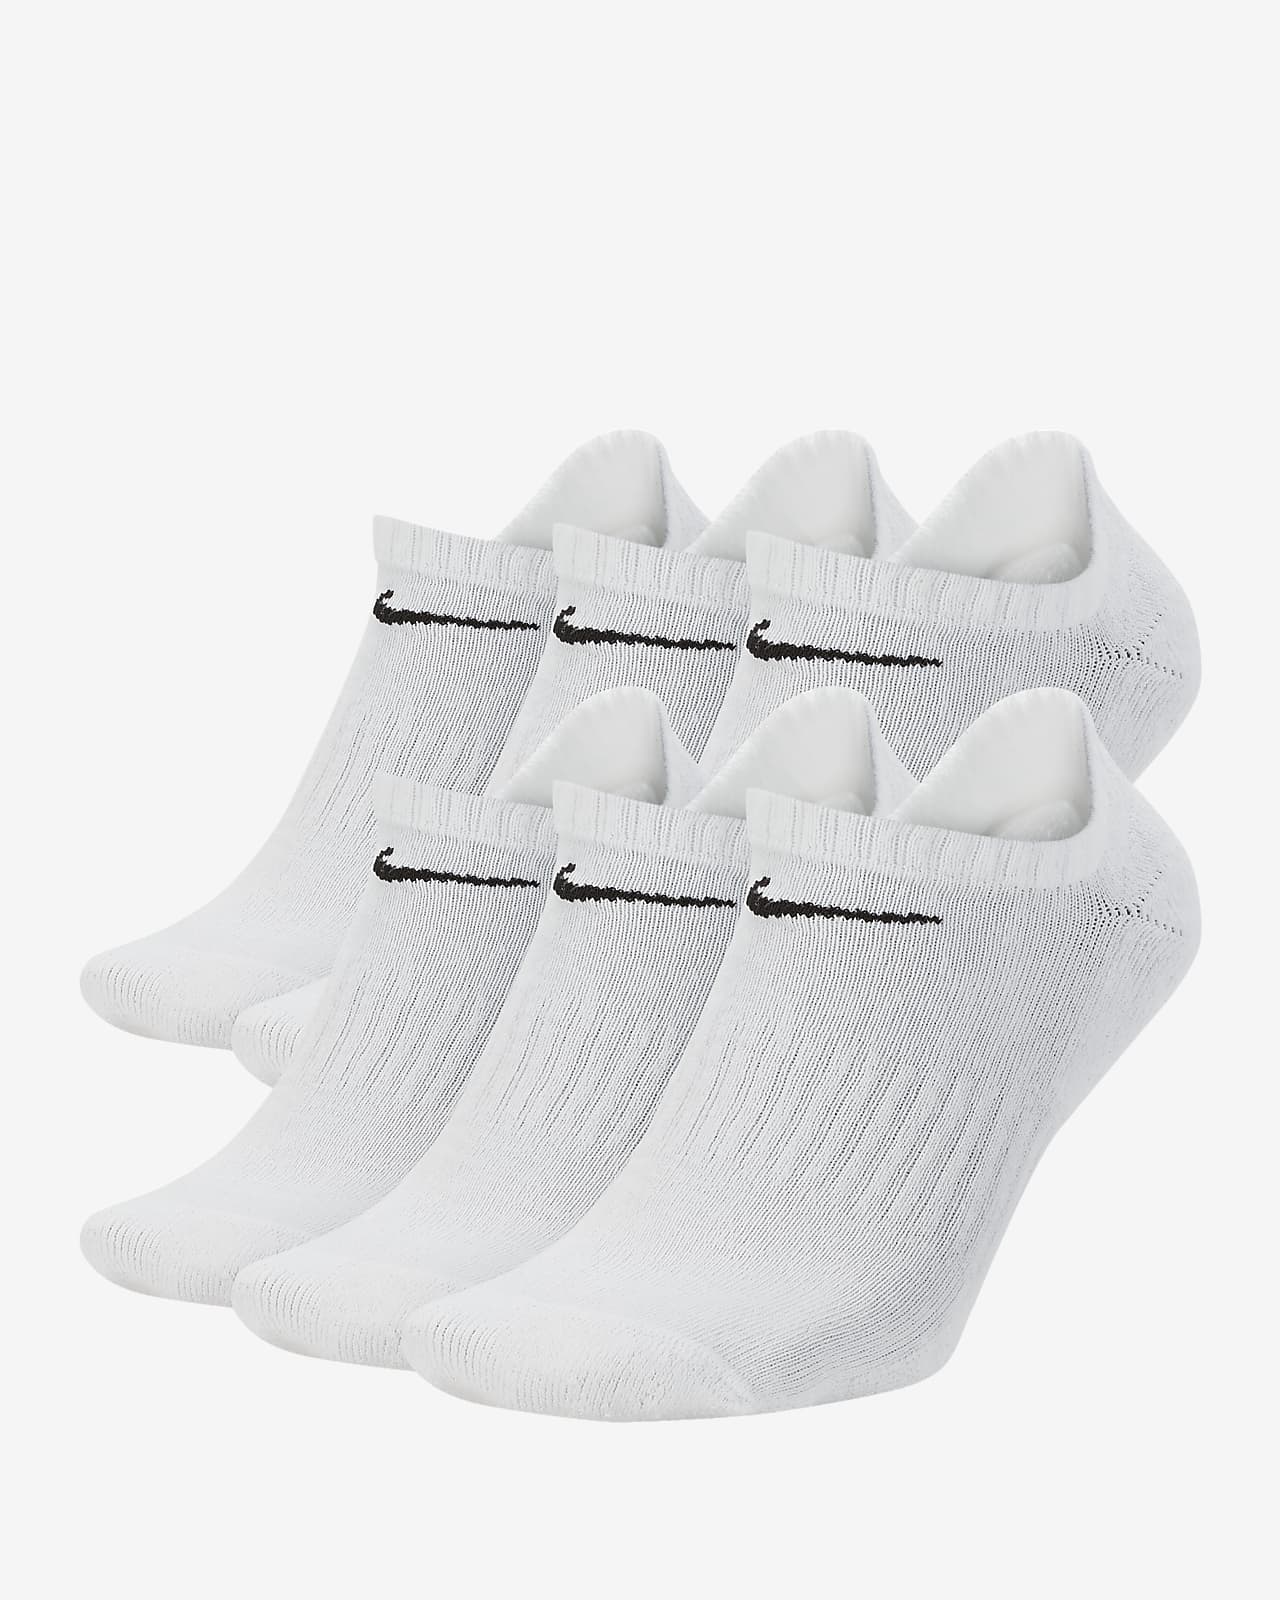 Nike Everyday Cushioned Calcetines cortos de entrenamiento (6 pares)